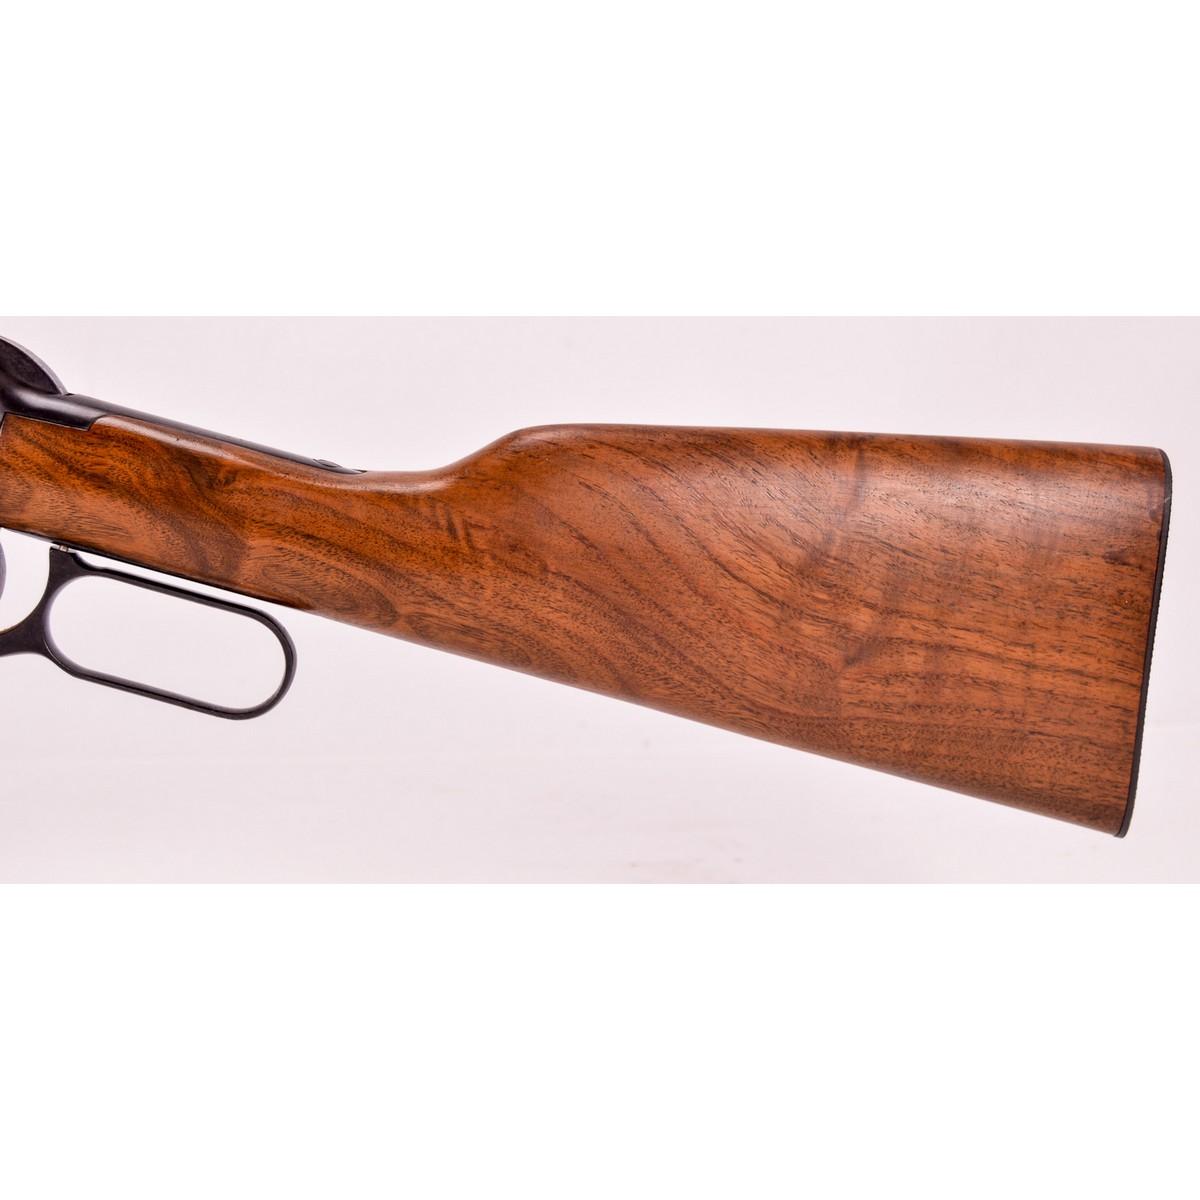 Pre-1964 Winchester Model 94 Carbine .30-30 (C)